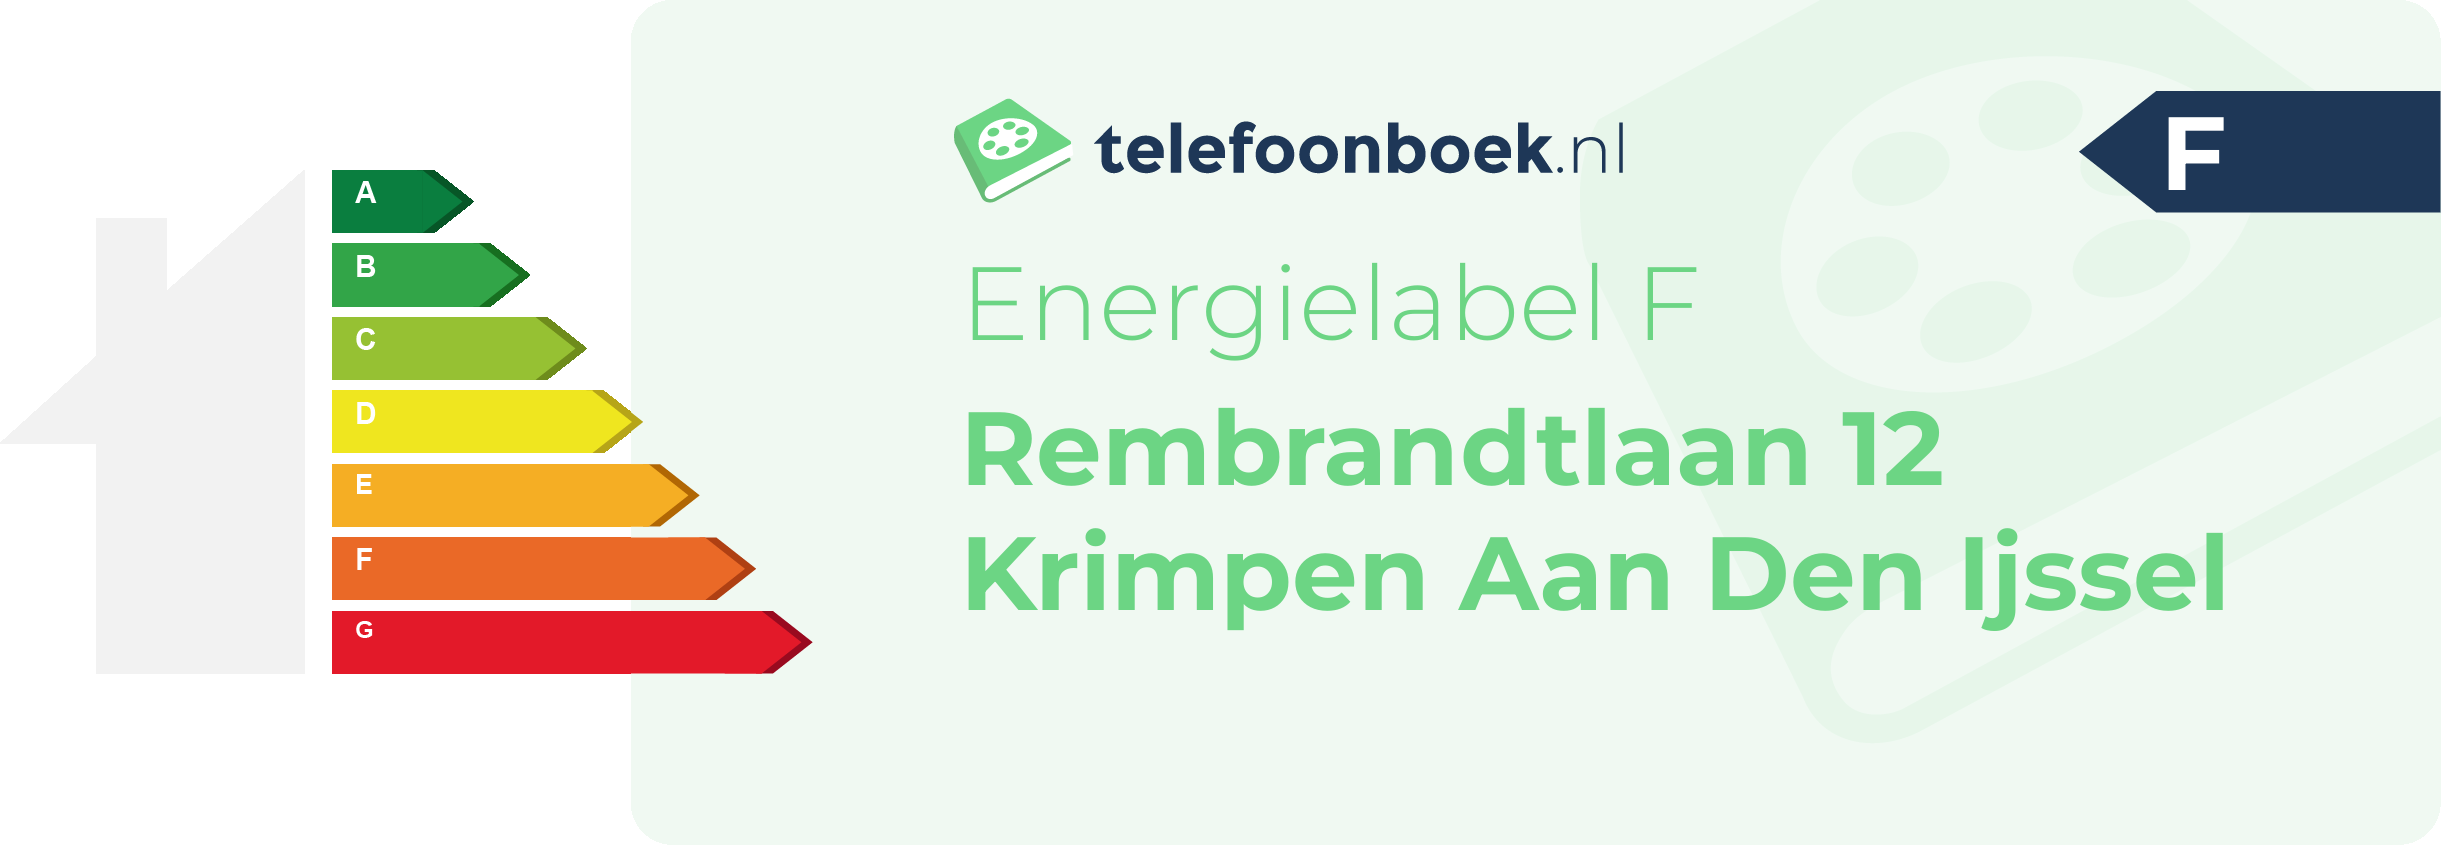 Energielabel Rembrandtlaan 12 Krimpen Aan Den Ijssel